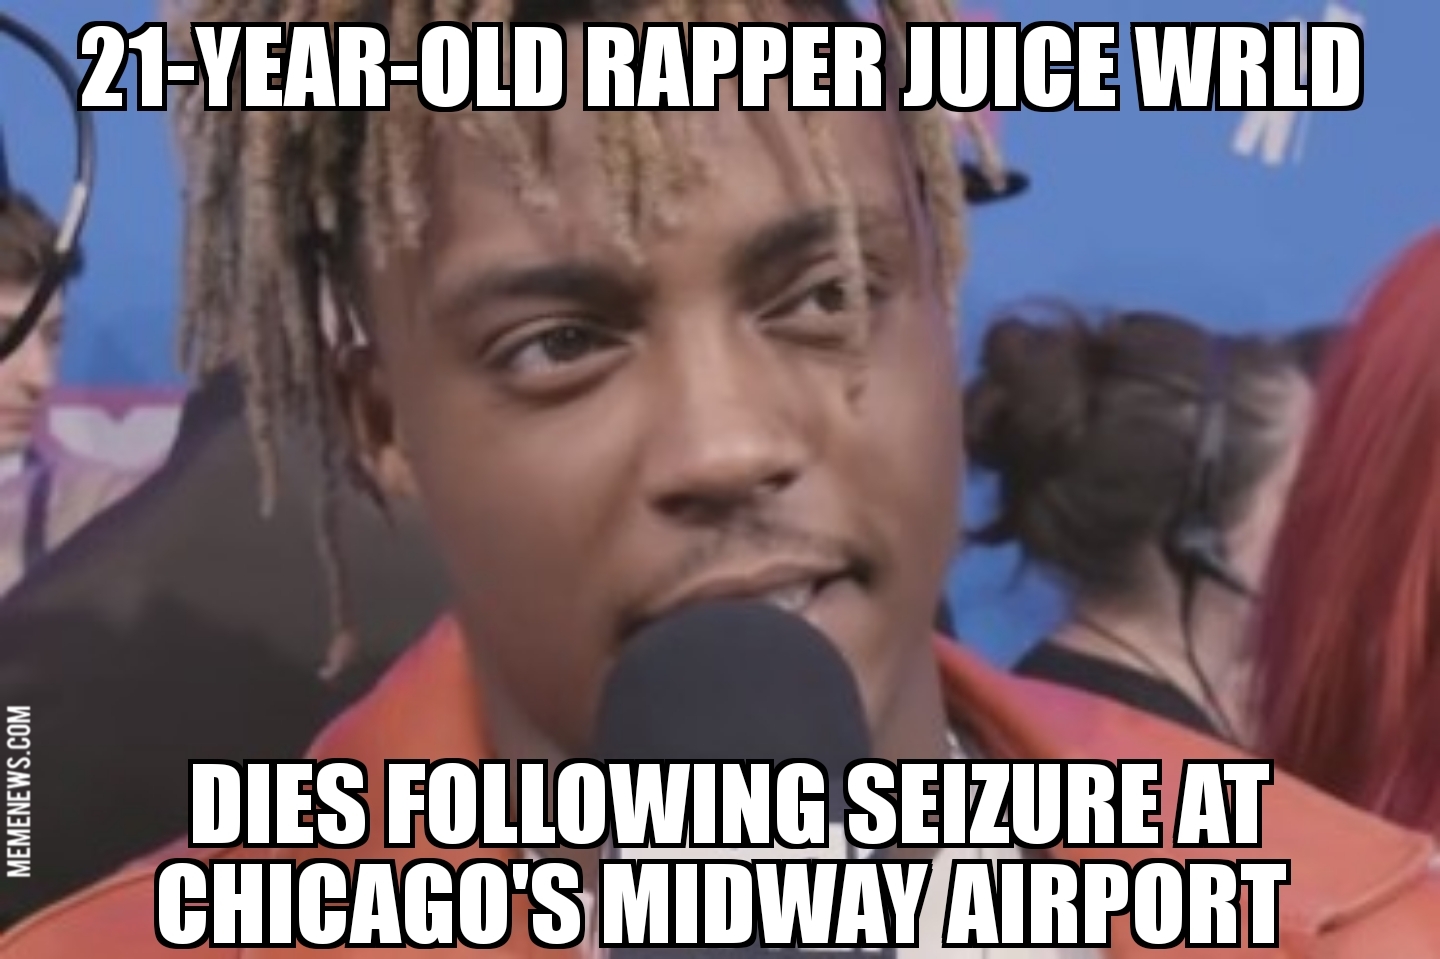 Rapper Juice WRLD dies following seizure